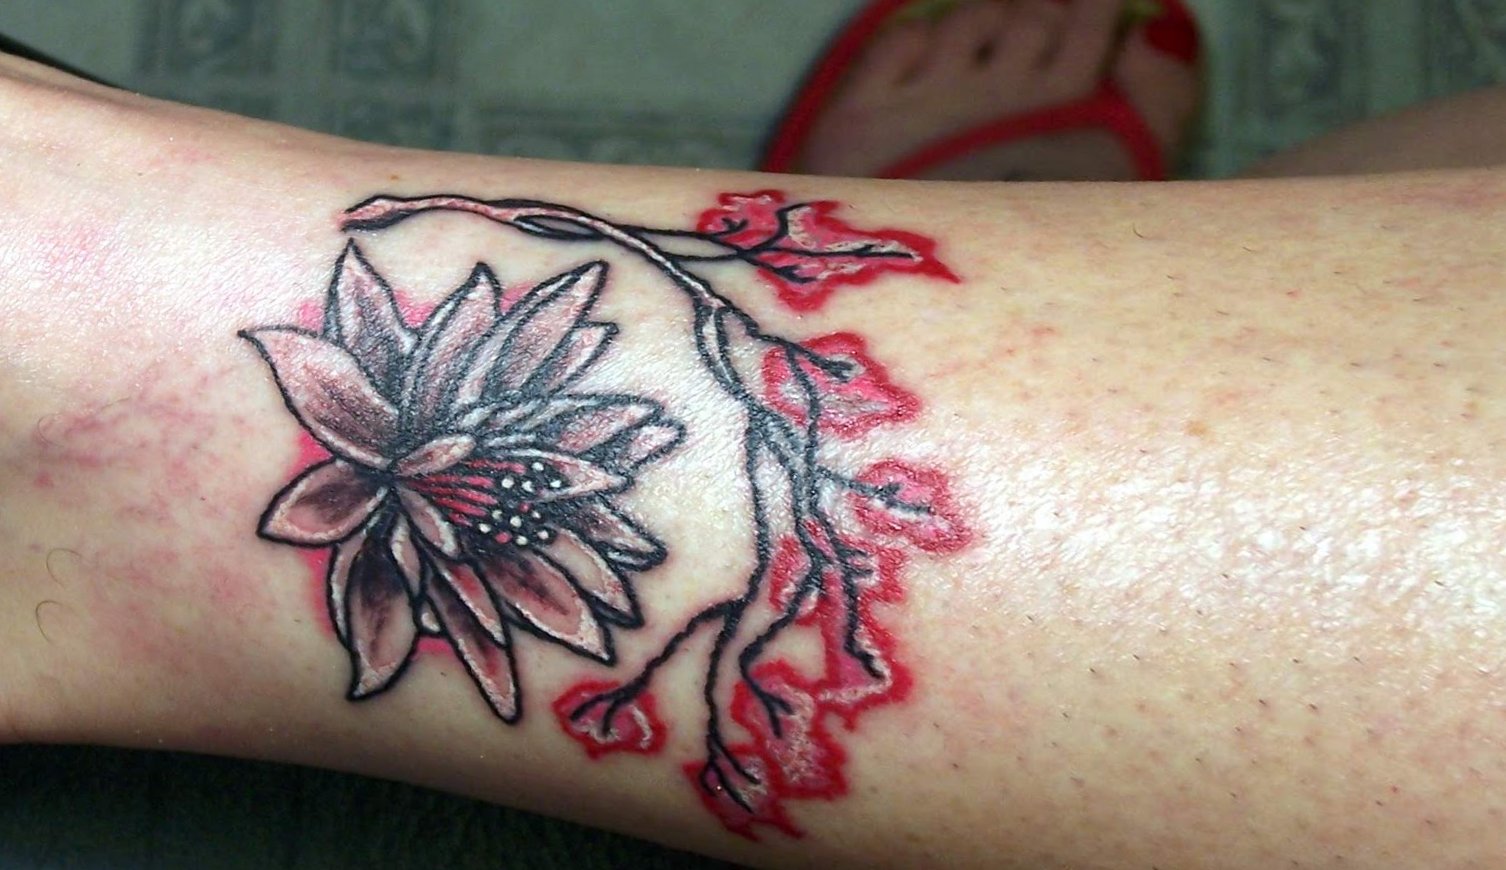 Kleine Blumen Tattoos alletattoo.de 8